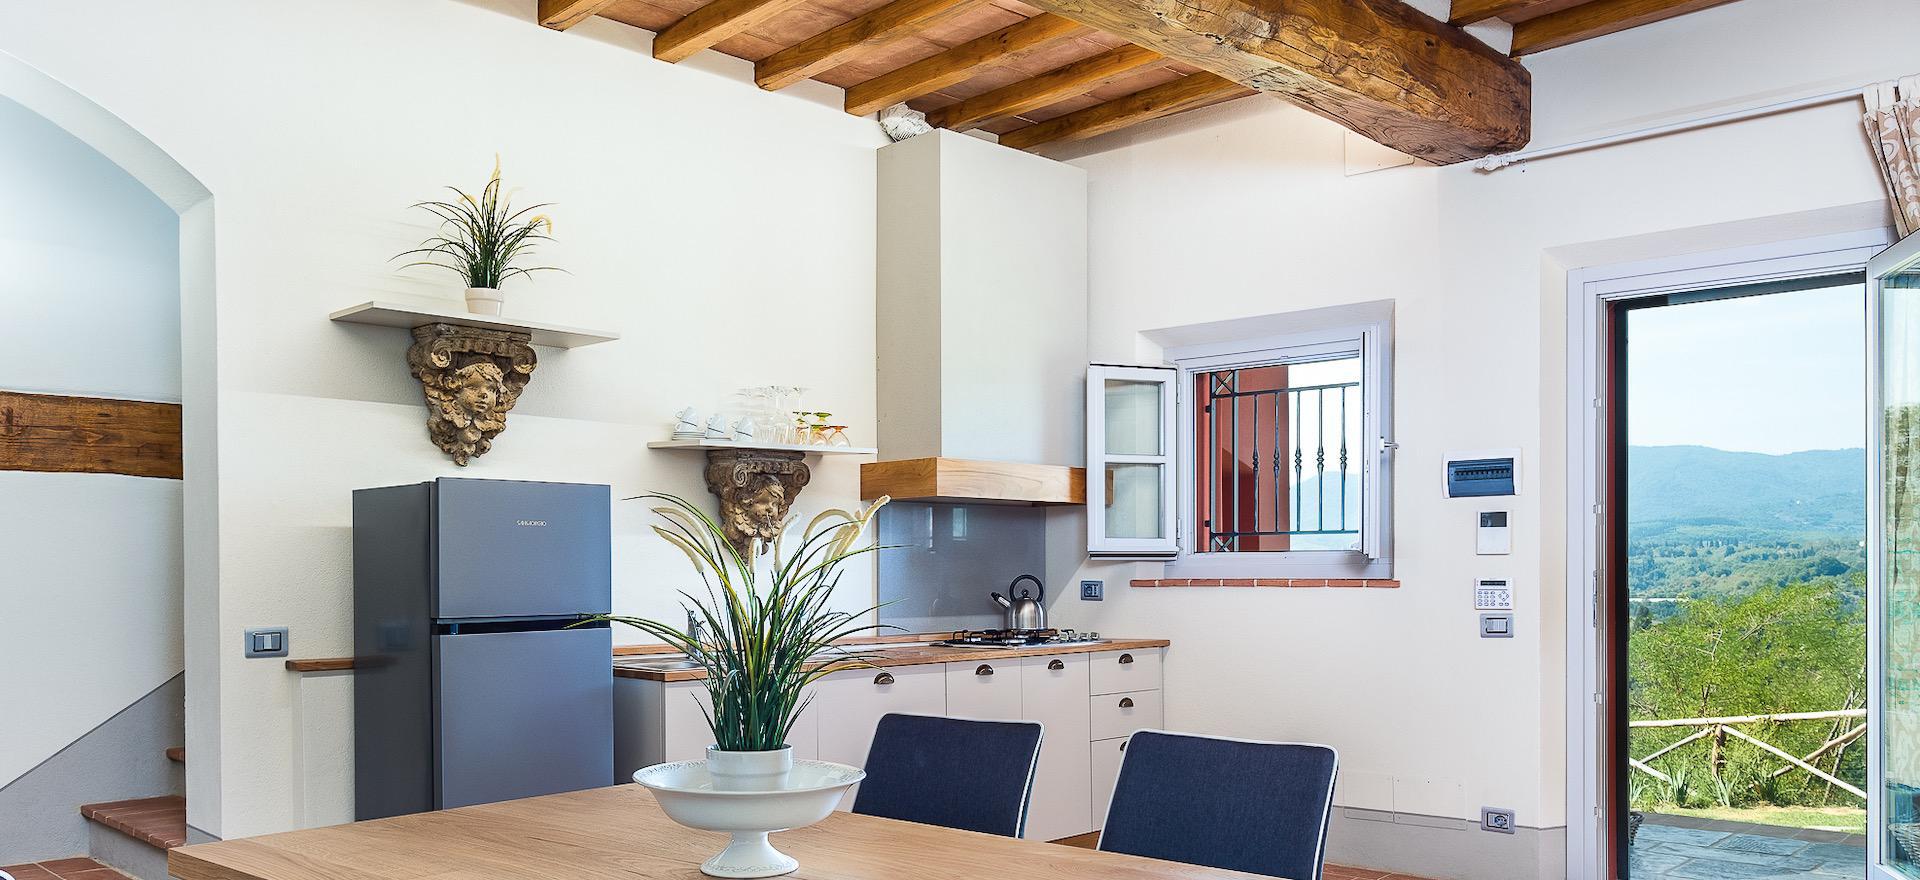 Agriturismo met design interieur in Toscane